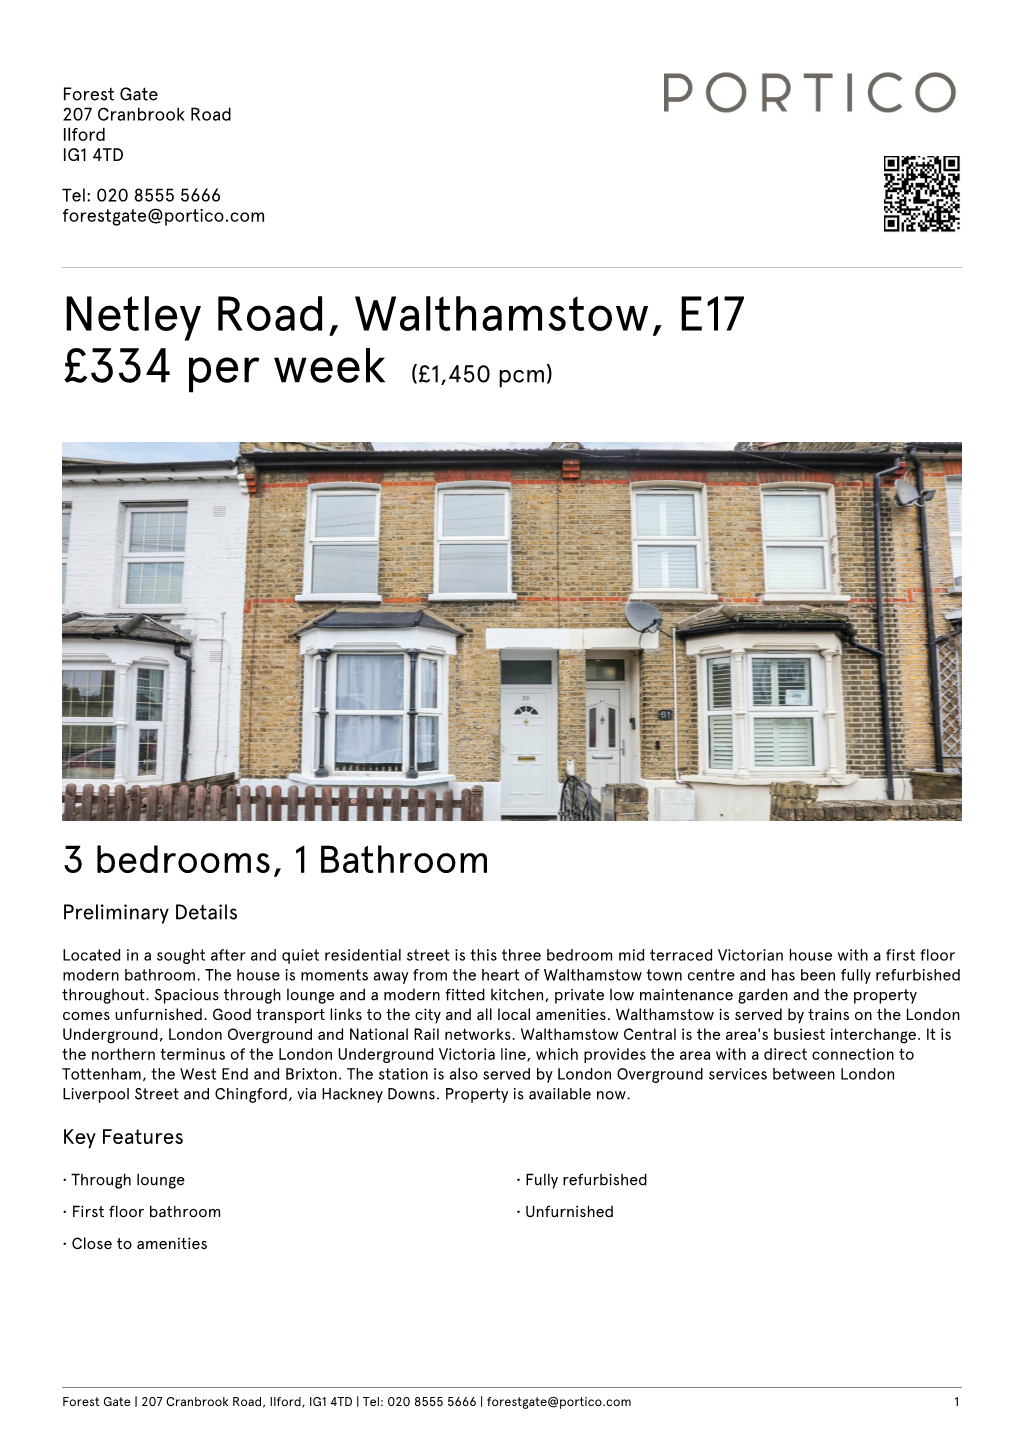 Netley Road, Walthamstow, E17 £334 Per Week